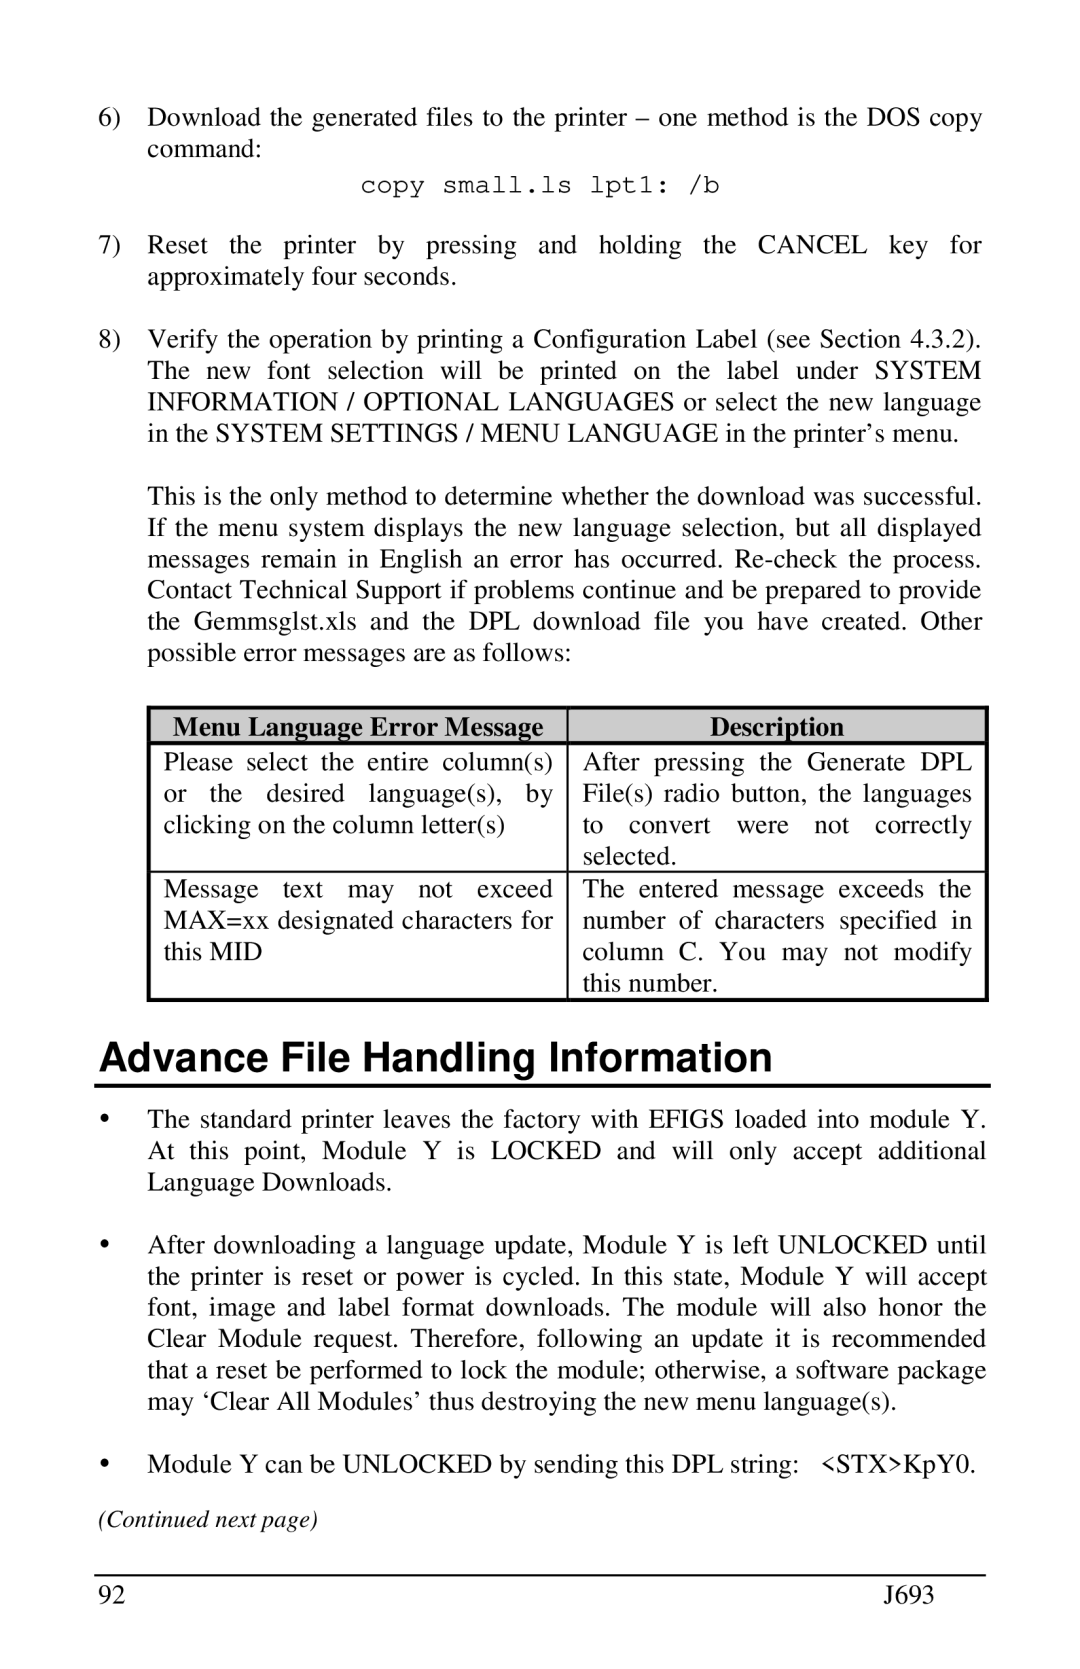 Pitney Bowes J693 OAdvance File Handling Information, copy small.ls lpt1 /b, Menu Language Error Message, Description 